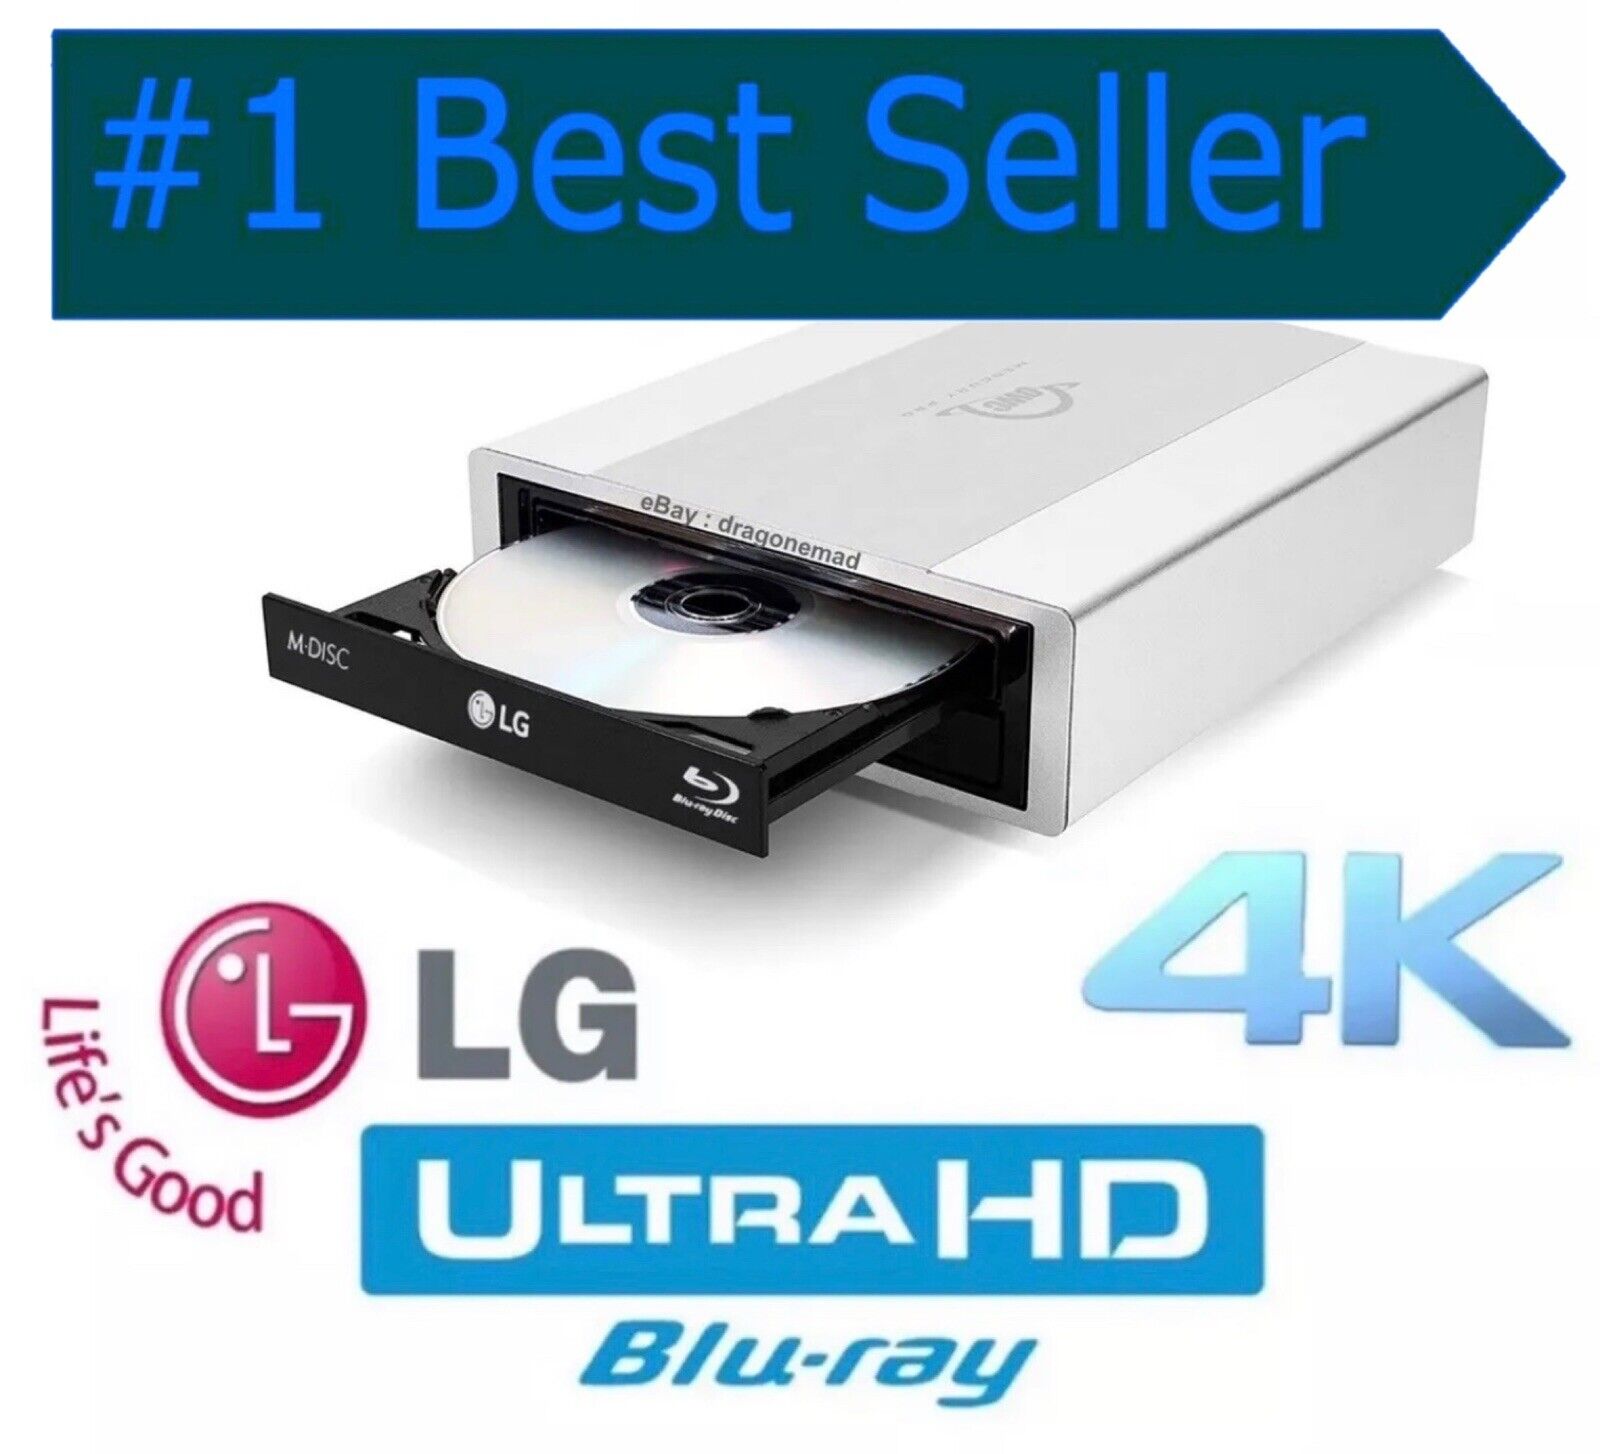 NEW External LG WH14NS40  4K ULTRA HD Blu-ray Drive, UHD Friendly FW v1.02